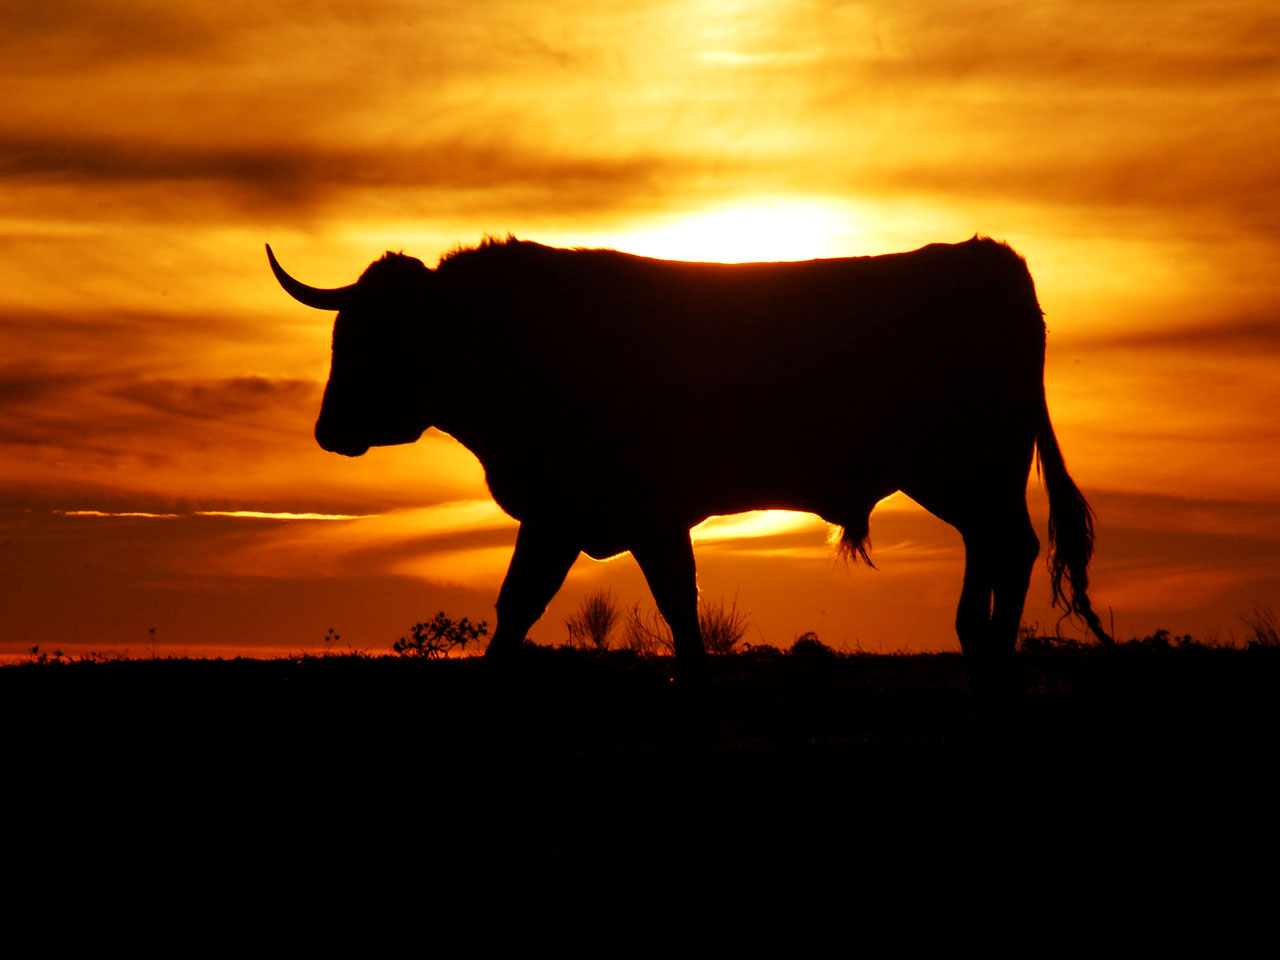 Big Bull On Background Sunset Photo Wallpaper For Desktop